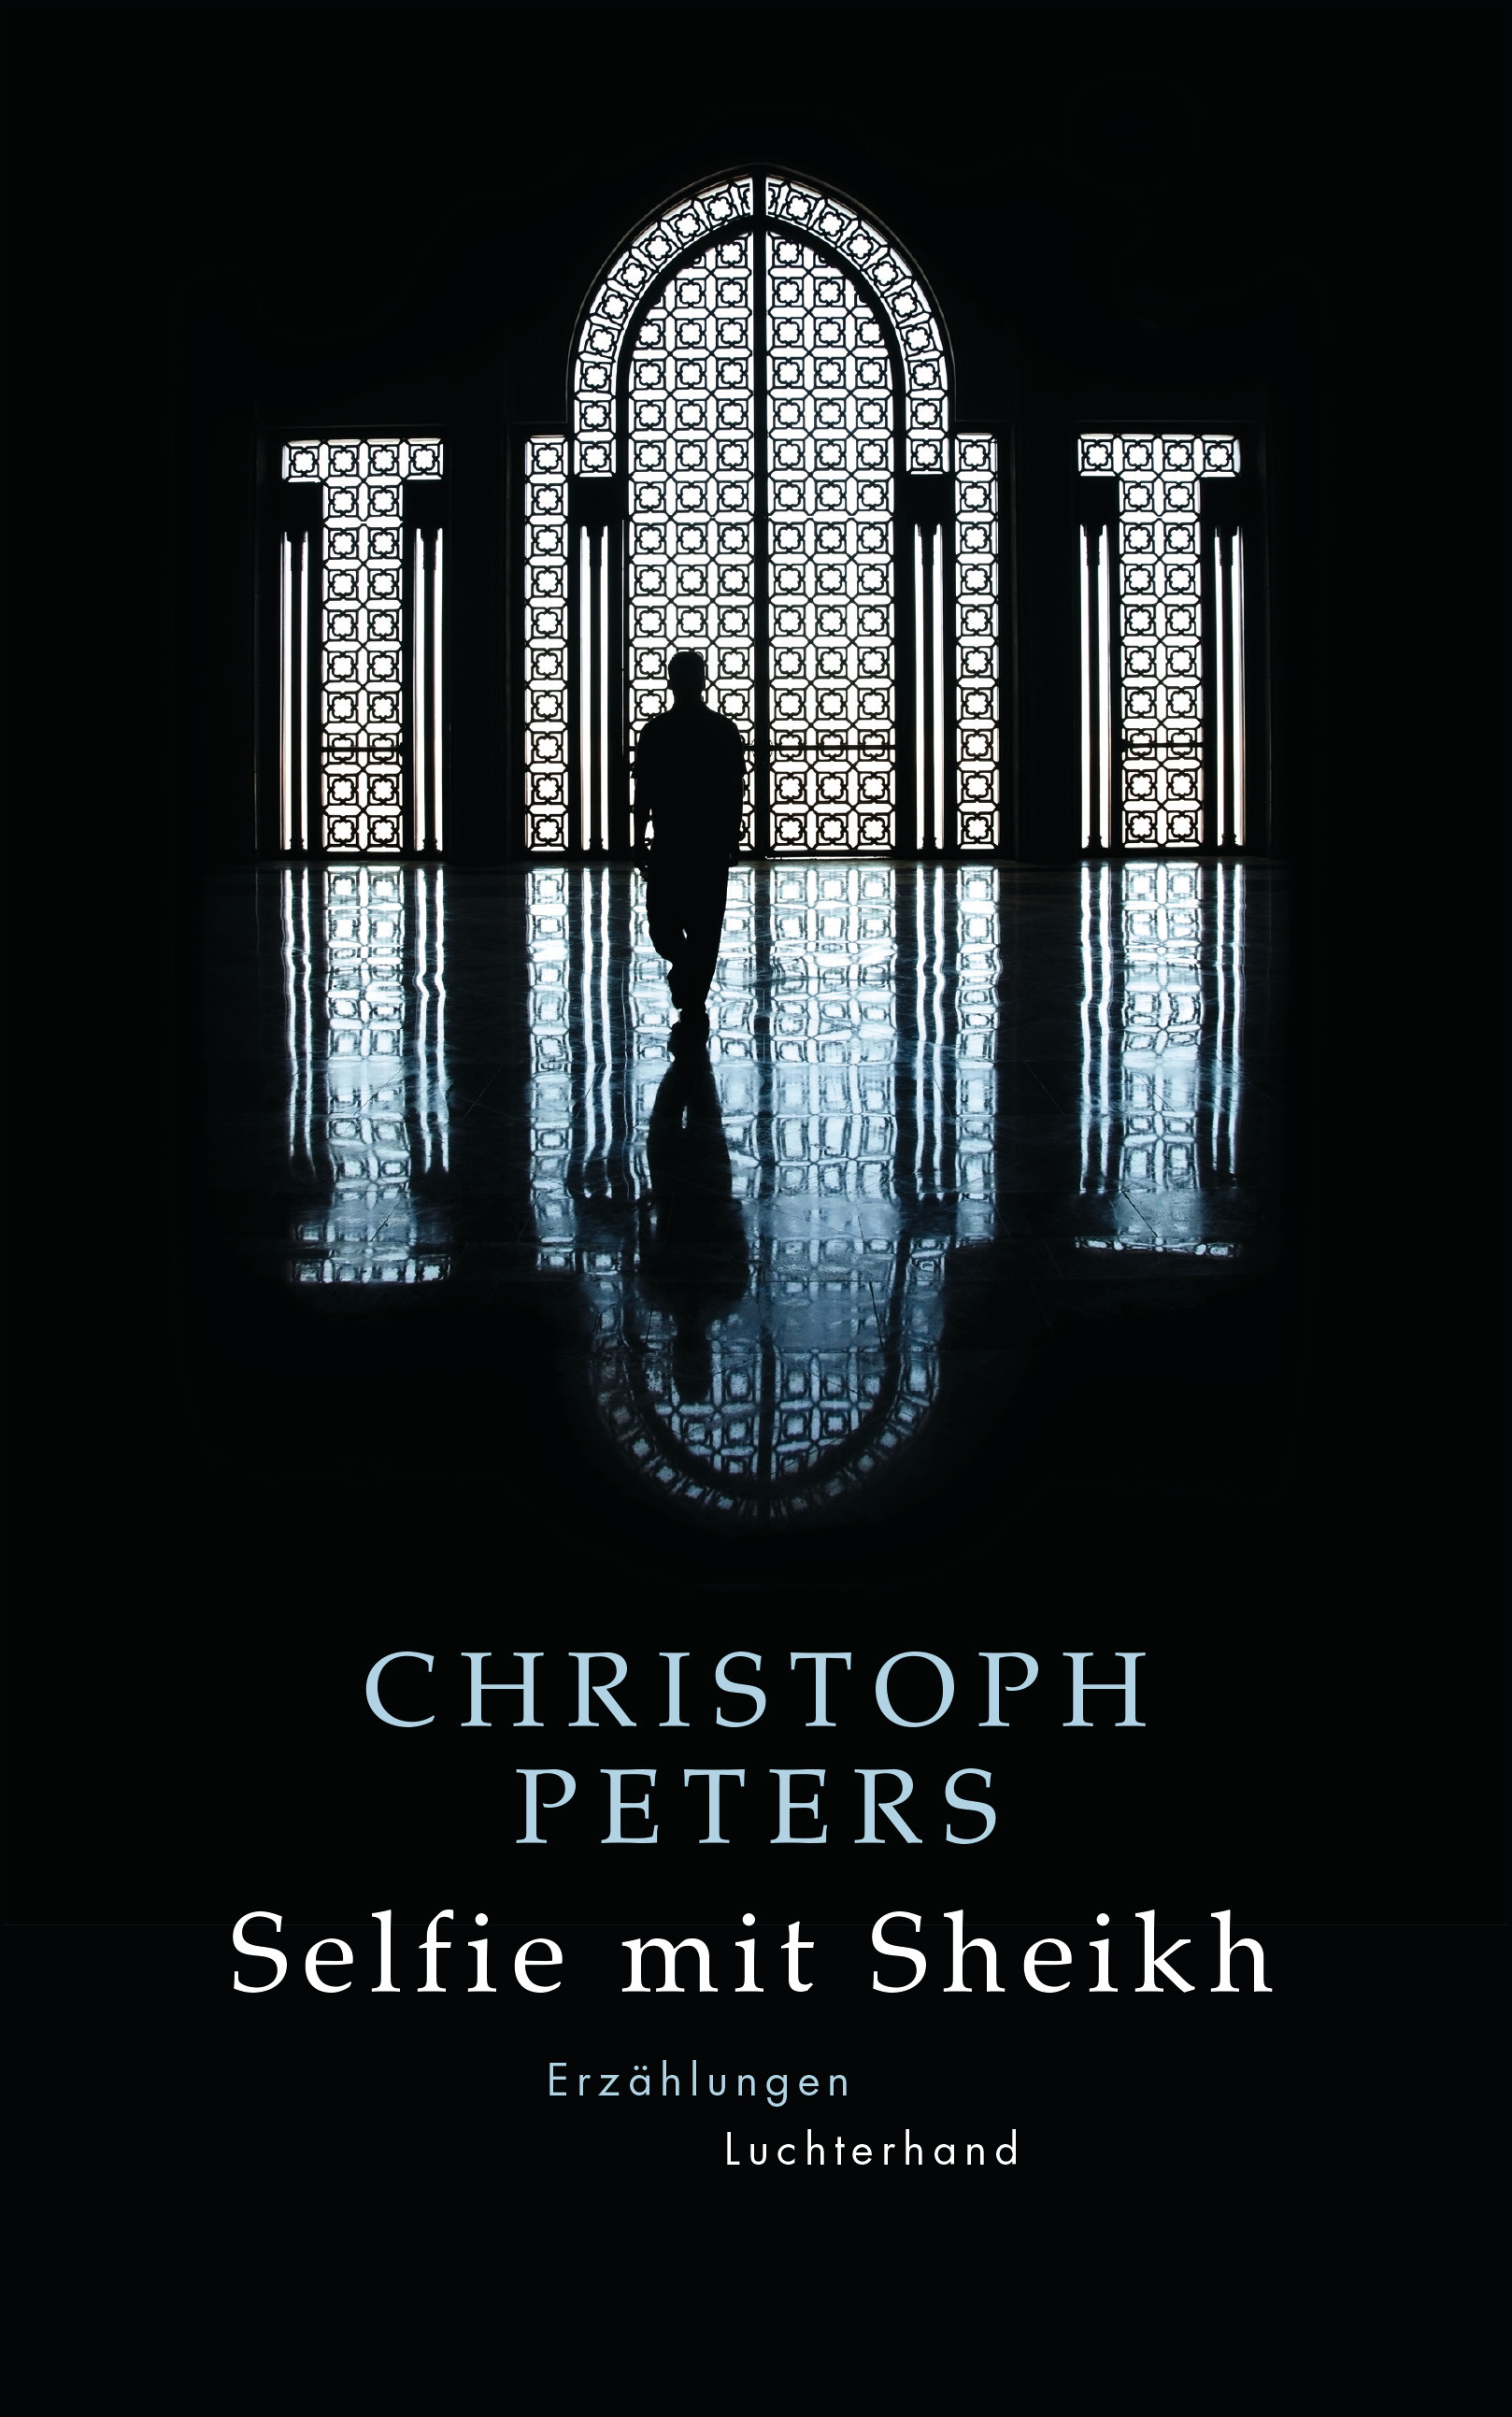 Buchcover Christoph Peters: "Selfie mit Sheikh" im Luchterhand-Literaturverlag 